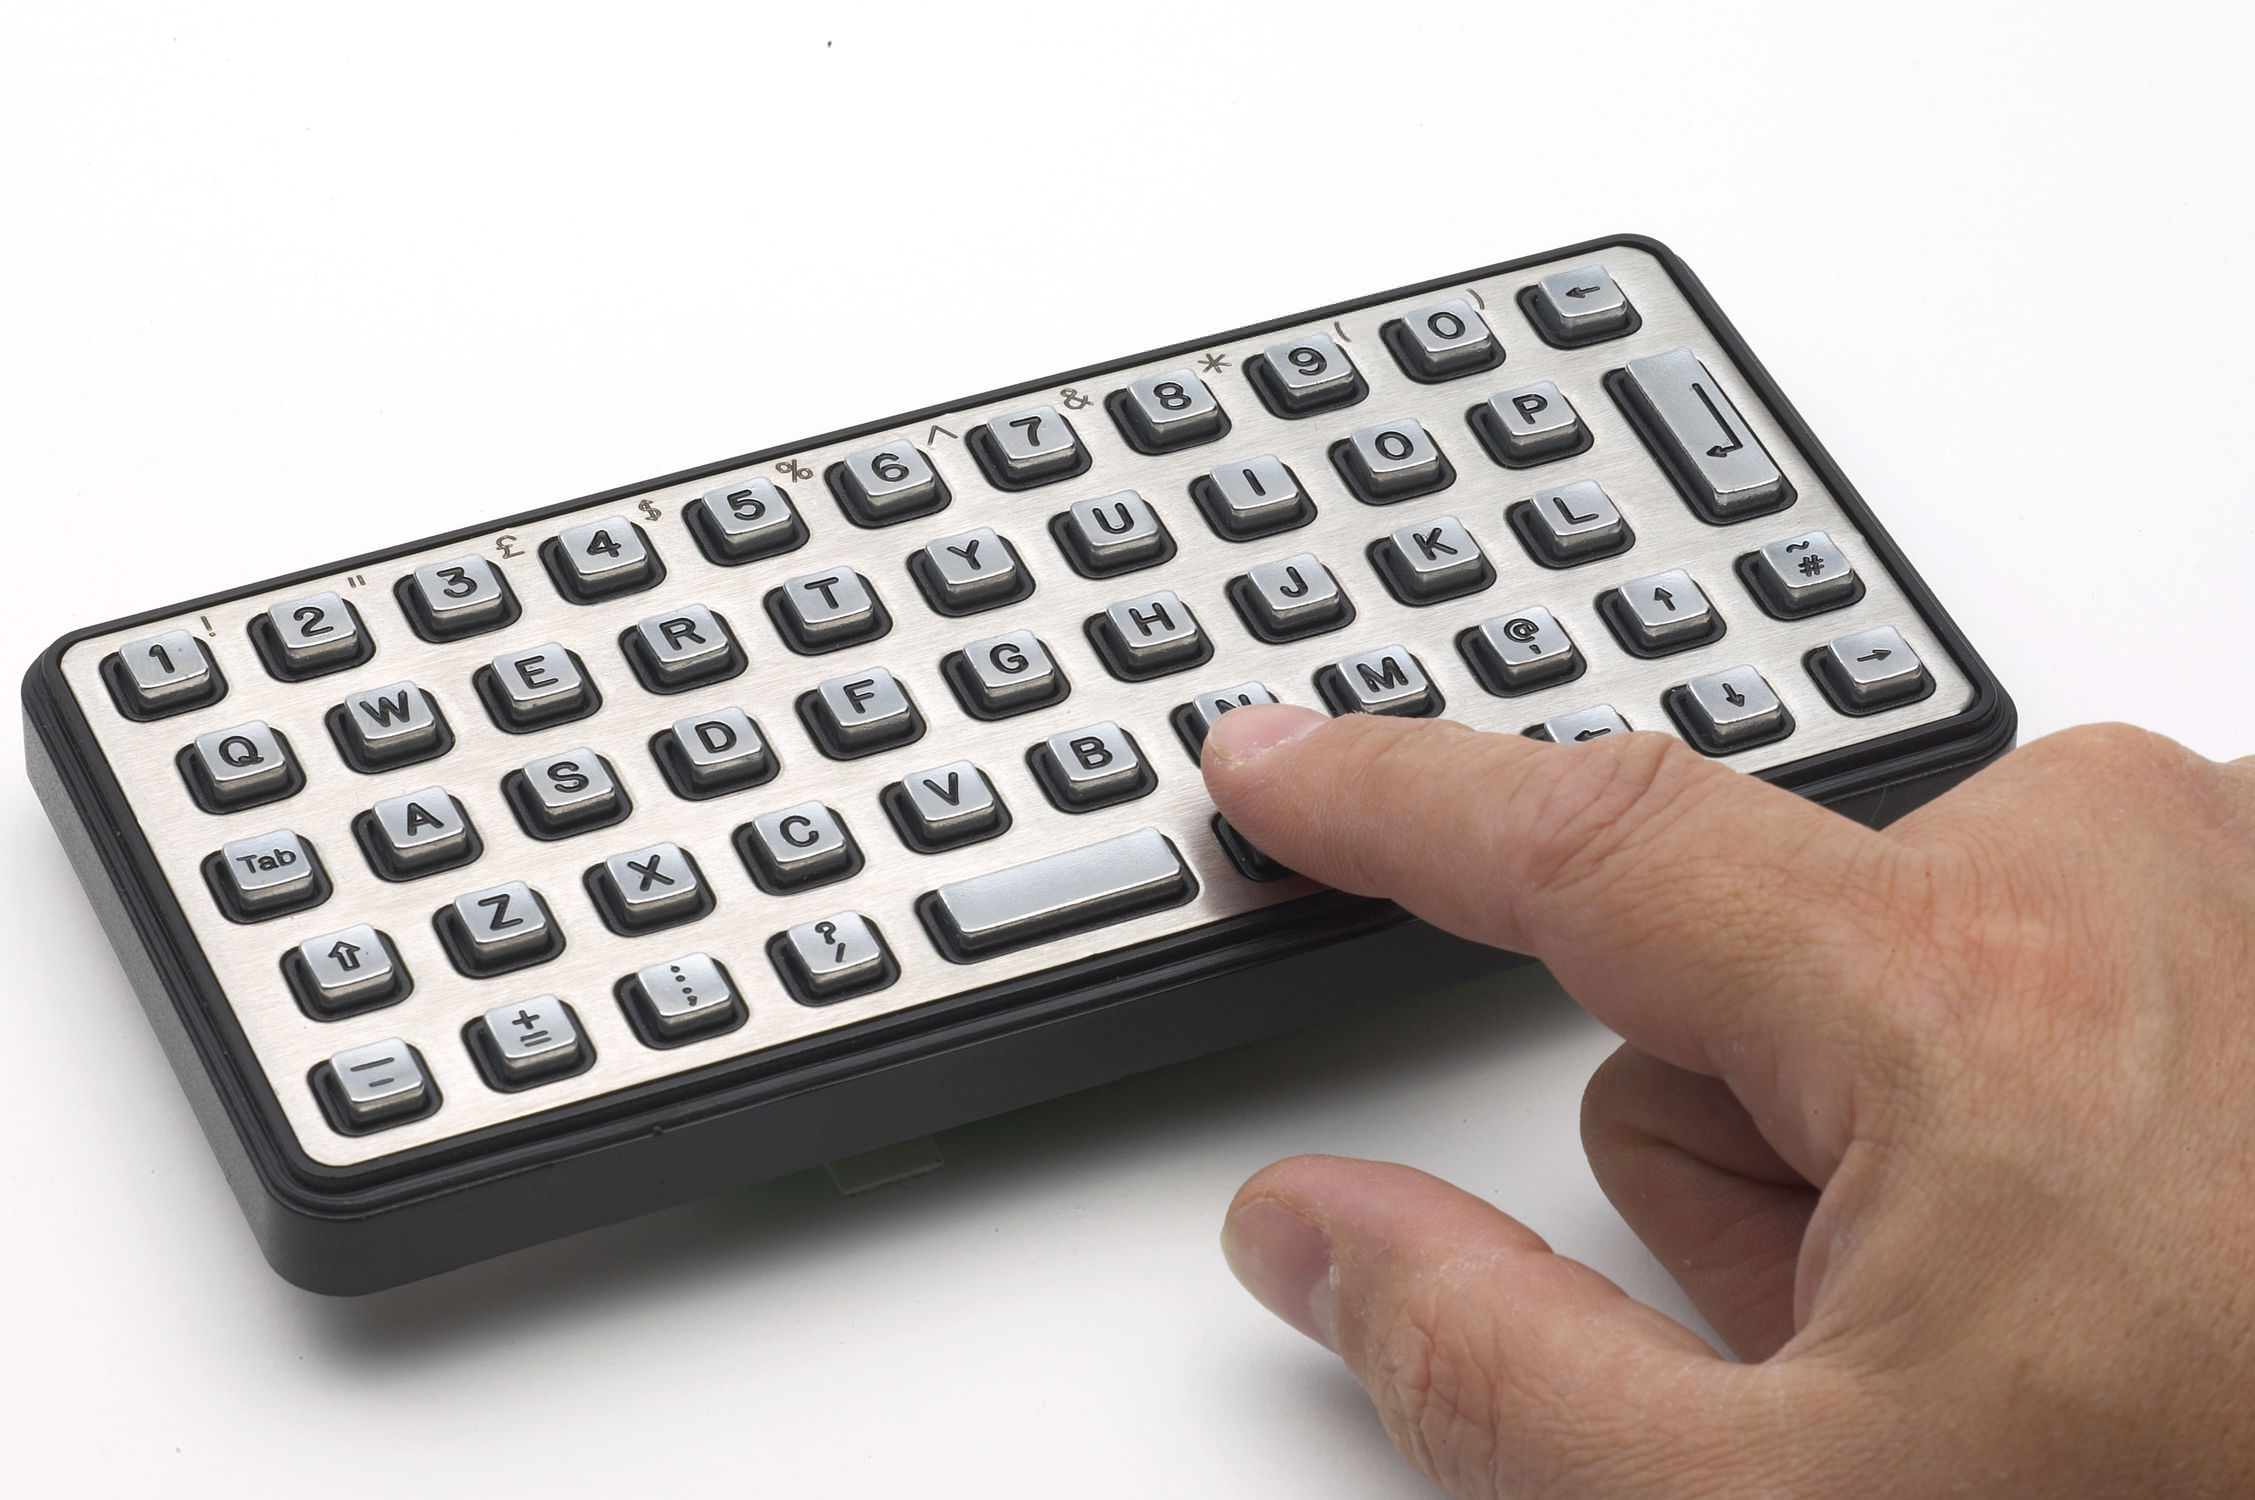 Специальная клавиатура помогает слабовидящим клиентам использовать киоски